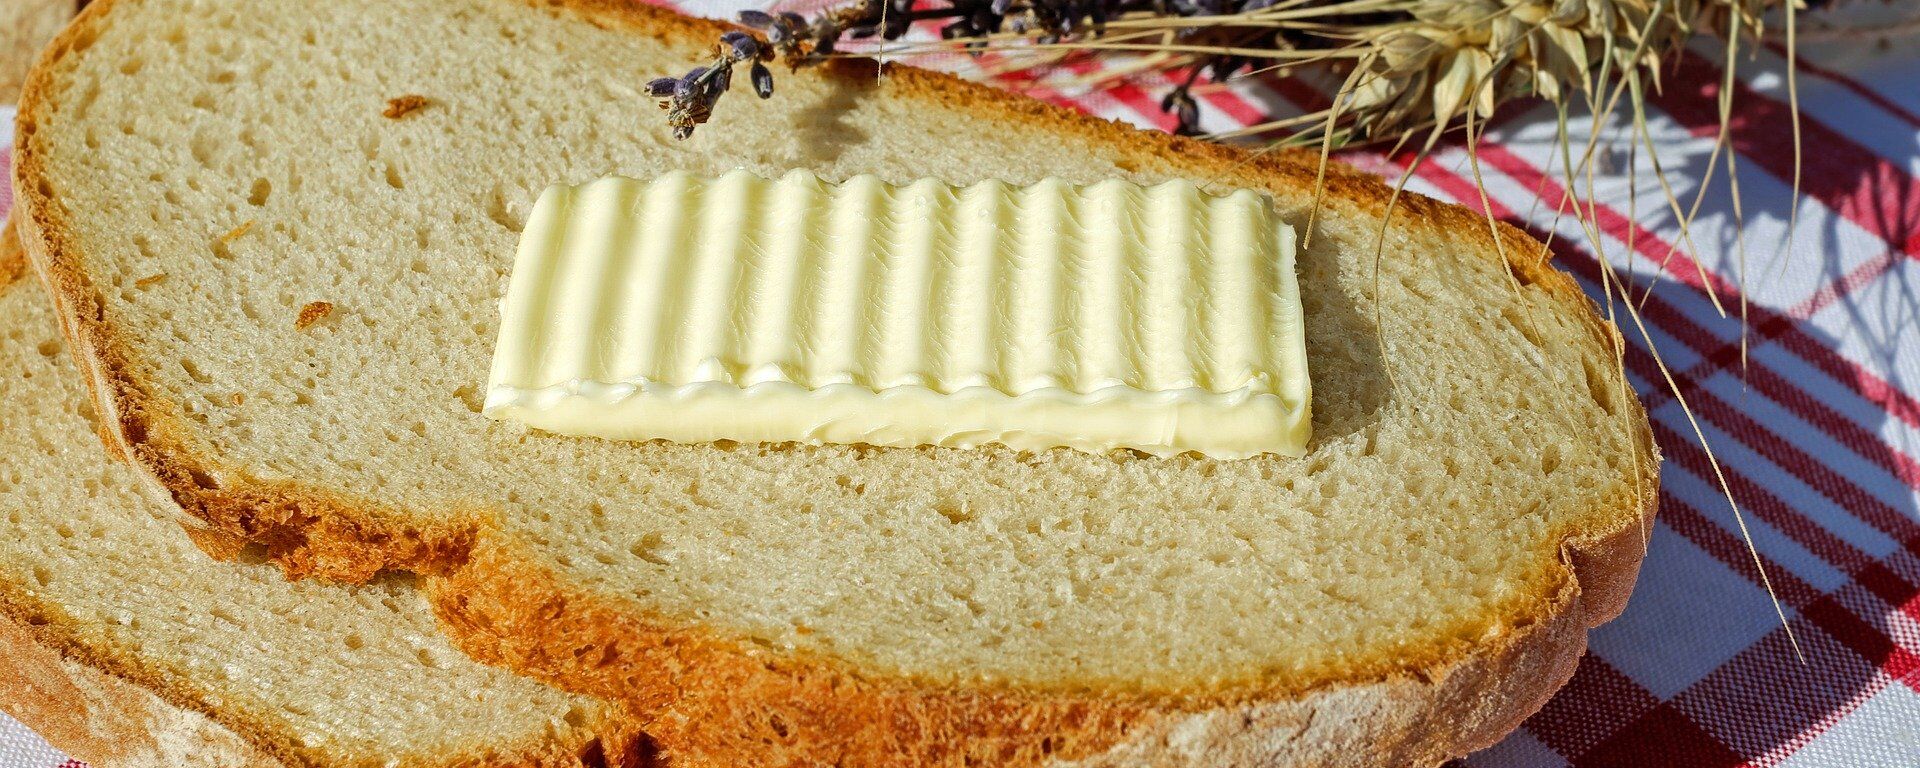 الخبز مع قطعة زبدة - سبوتنيك عربي, 1920, 14.09.2021